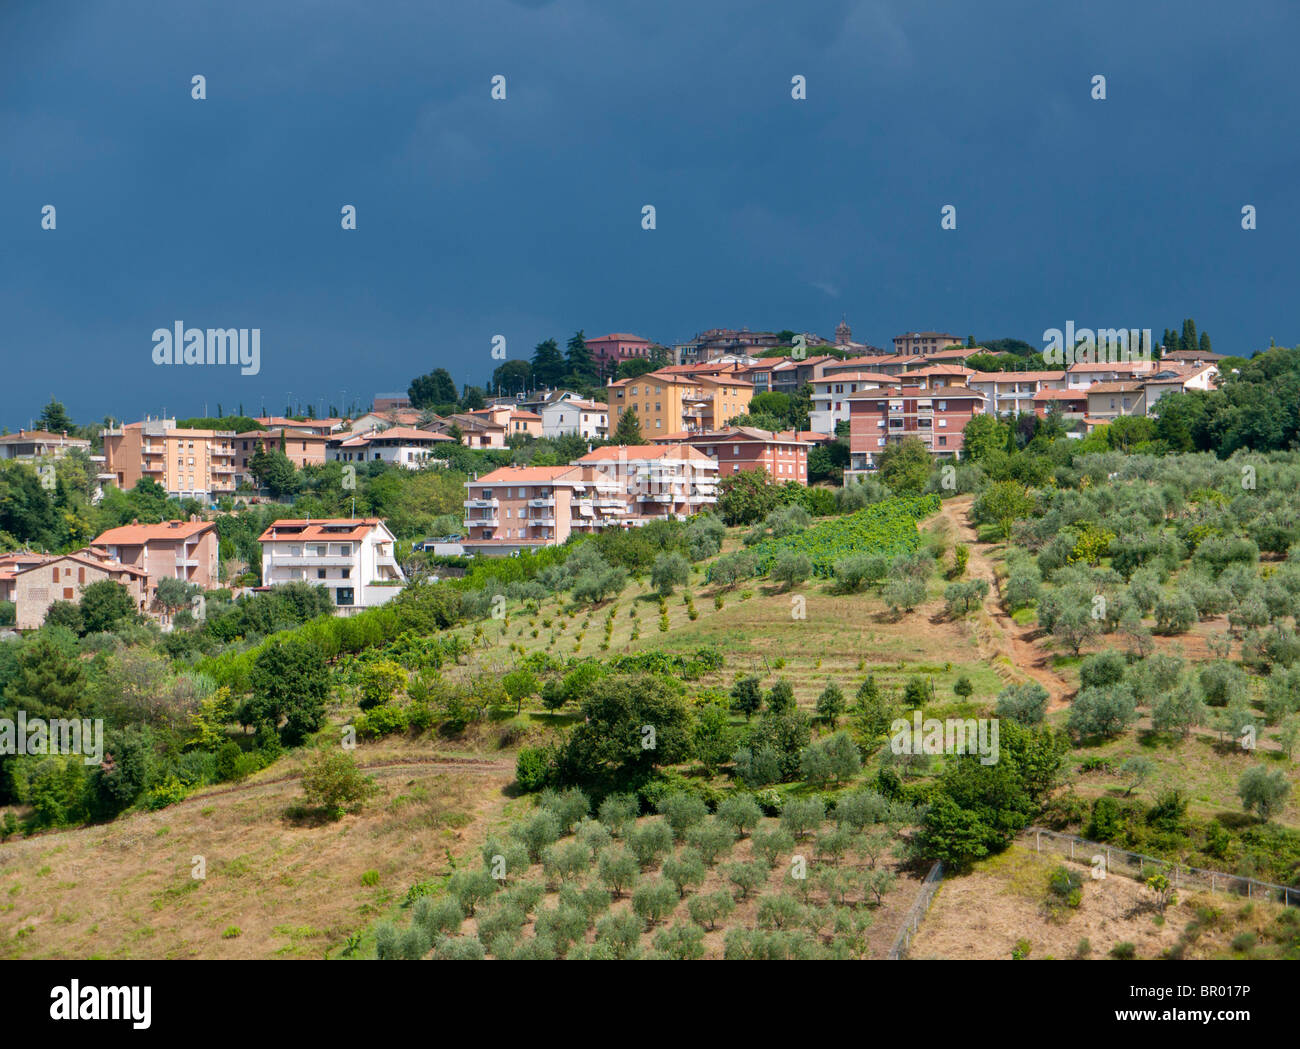 Gewitterwolken über einer Kulturlandschaft mit Olivenbäumen in Montaione in der Toskana / Italien. Stockfoto